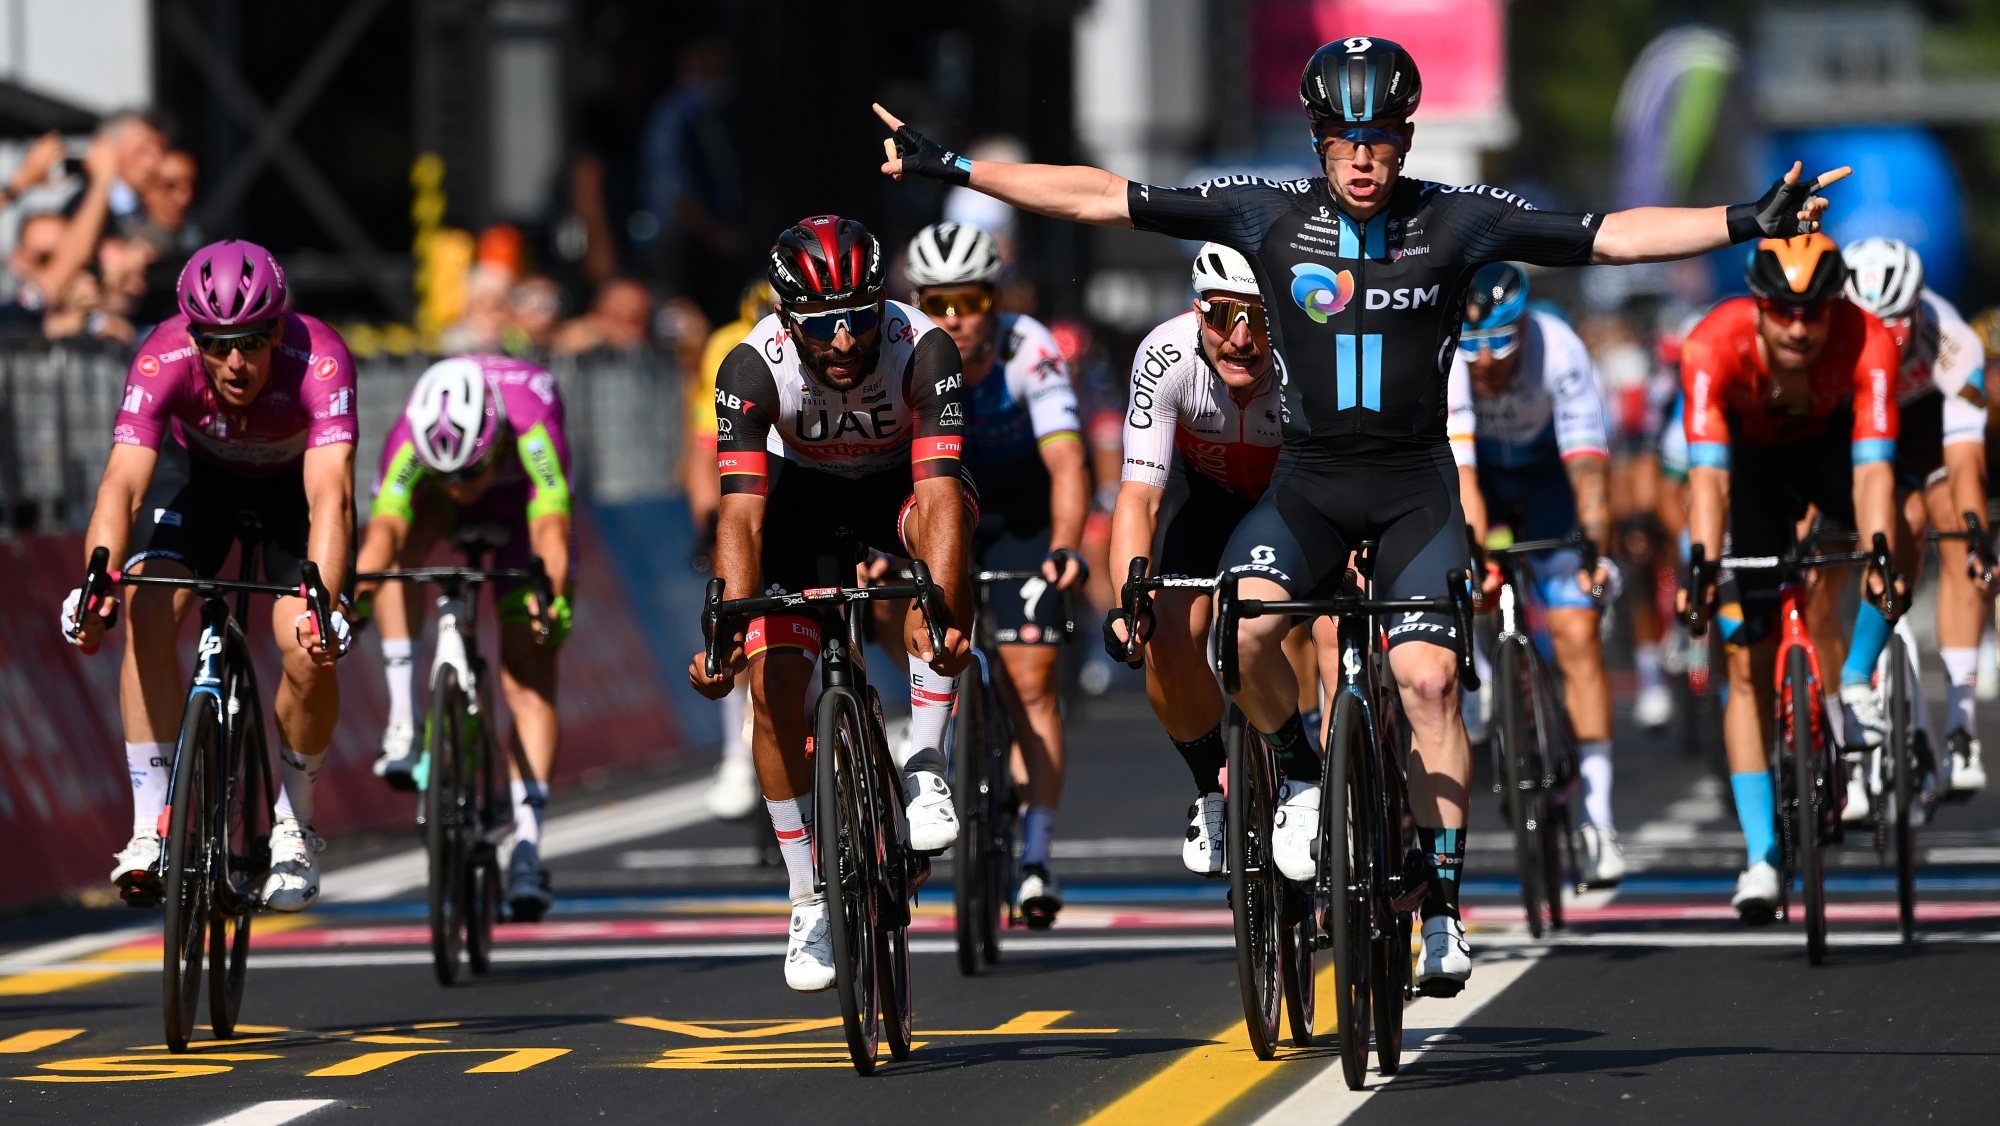 Démare e Gaviria chegaram aos últimos metros numa aparente melhor posição mas foi Dainese a conseguir a primeira vitória transalpina neste Giro de 2022